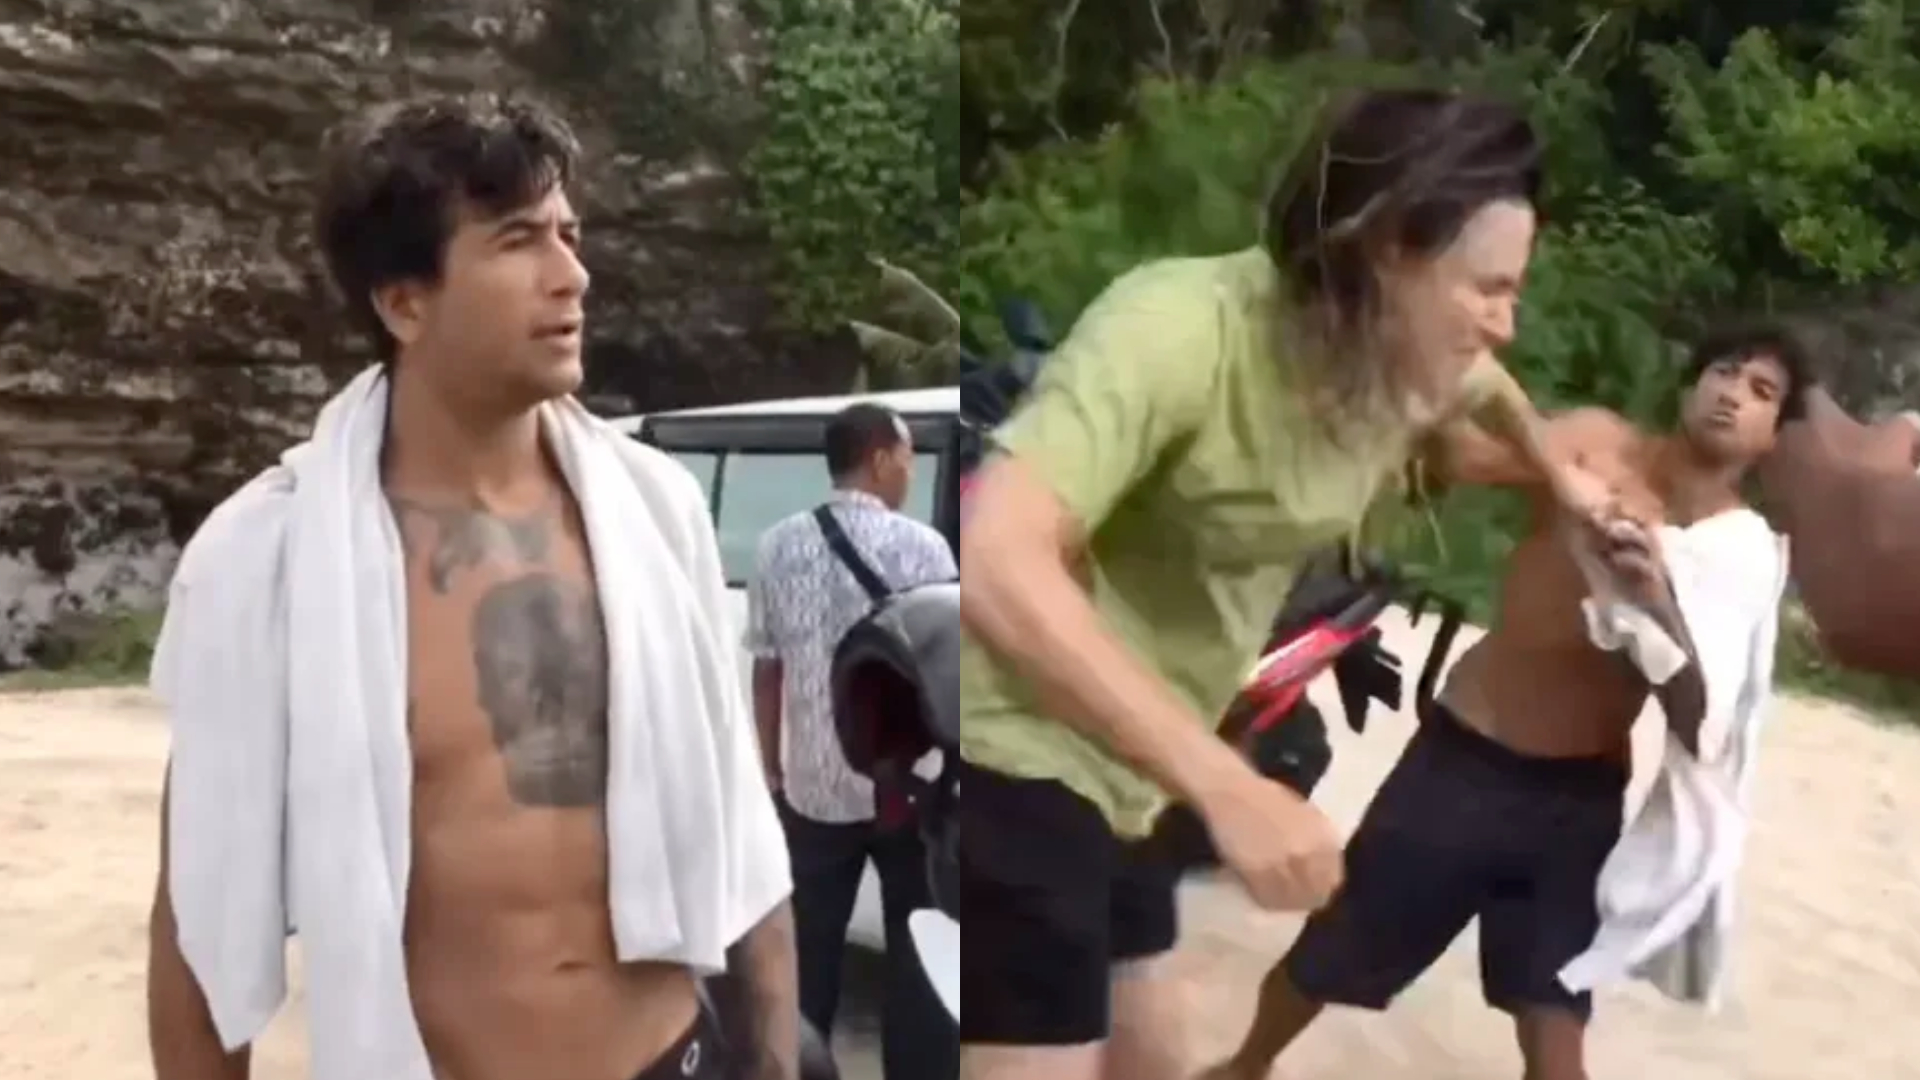 Globo mostra novos vídeos de surfista batendo em mulher: ‘Você é igual homem’; Ex-namorada dele revela agressões